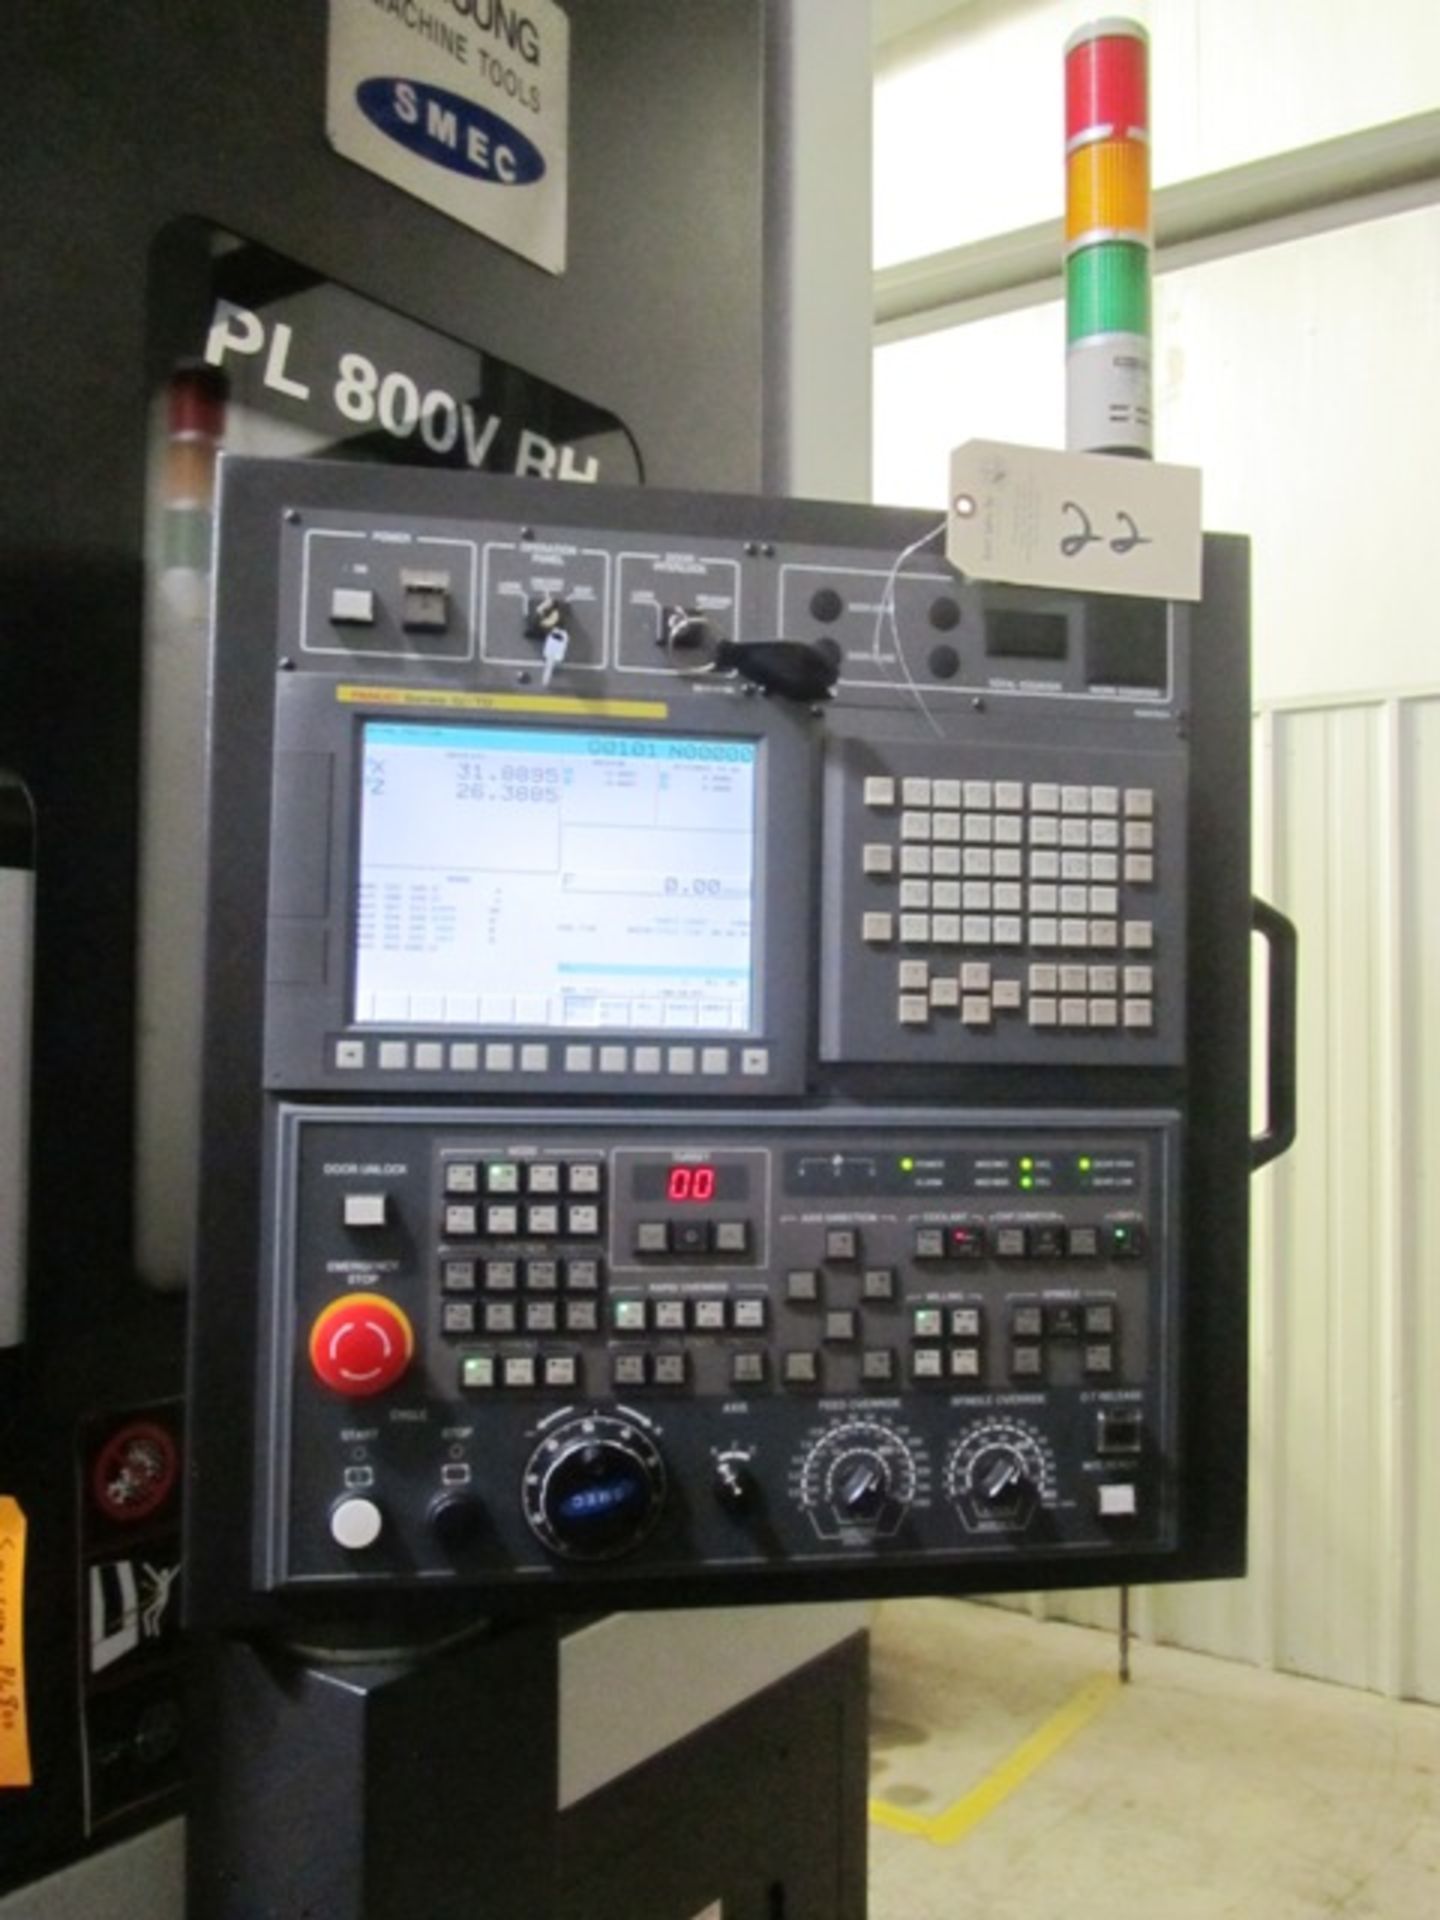 Samsung PL800V CNC Vertical Turning Center - Image 2 of 5